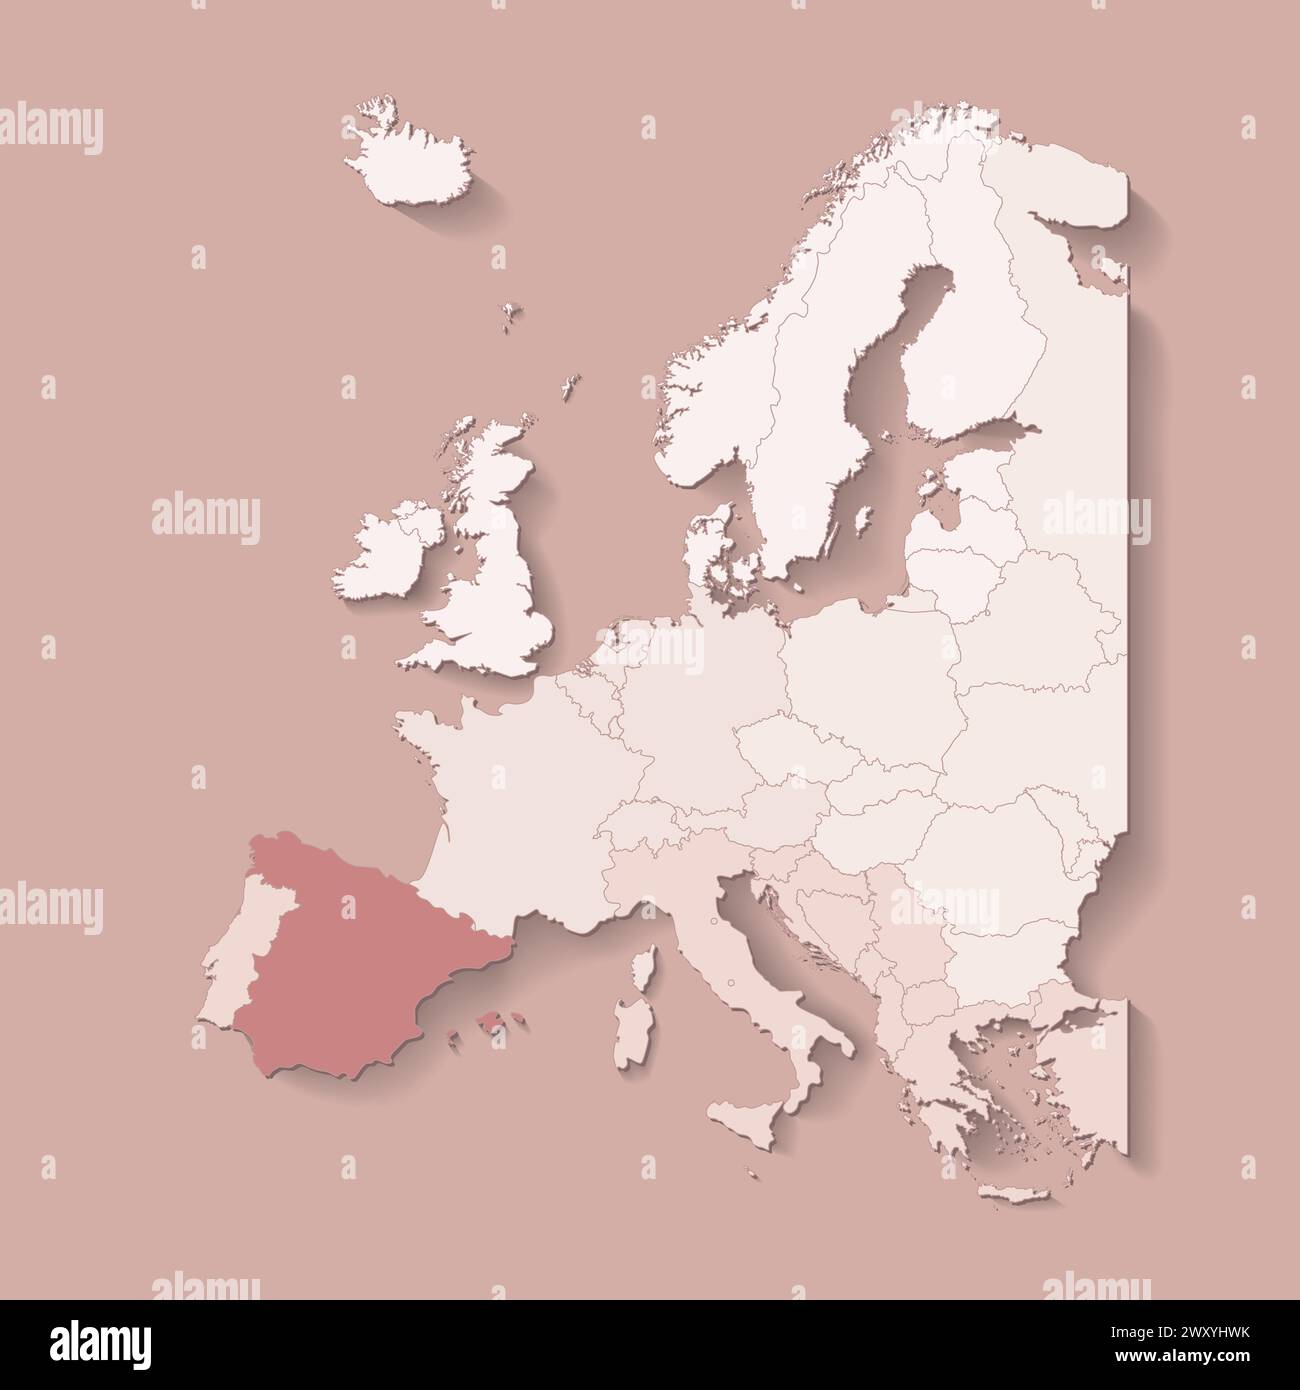 Illustrazione vettoriale con terra europea con confini di stati e paese contrassegnato Spagna. Mappa politica in colori marroni con l'occidentale, il sud e ecc. regi Illustrazione Vettoriale